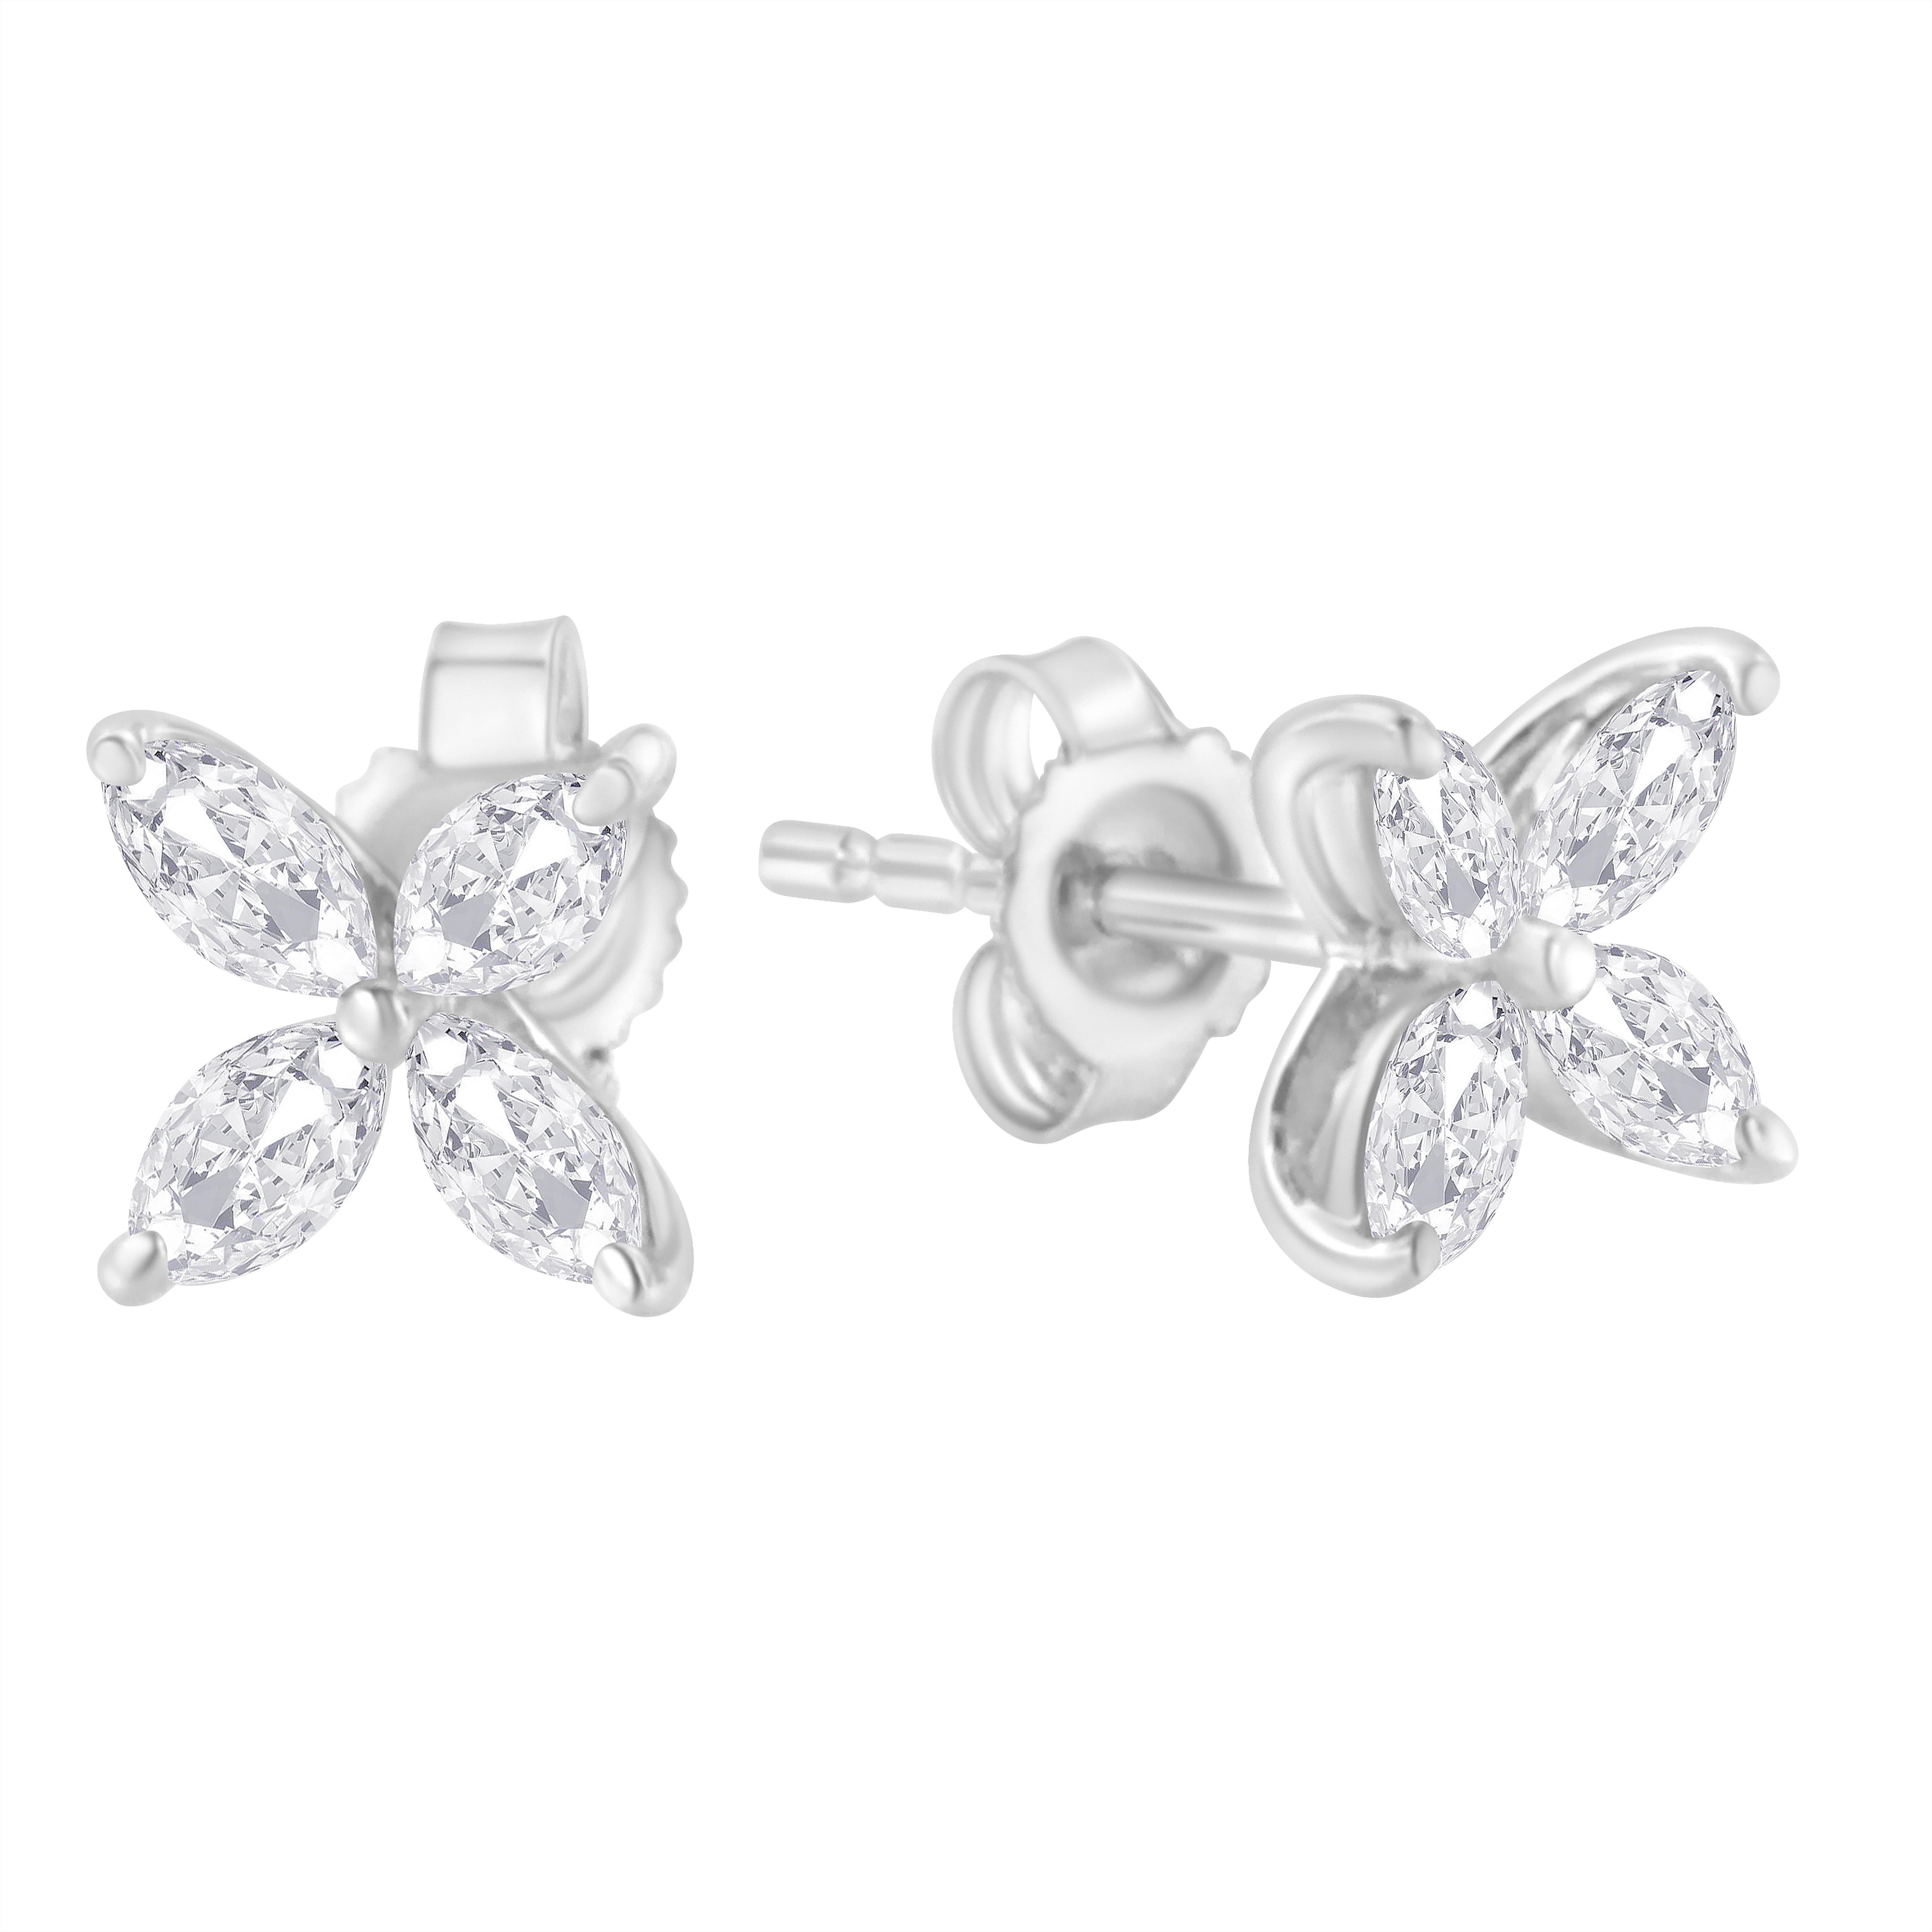 Paire de boucles d'oreilles en diamant fleuri, chacune comportant 8 diamants en forme de marquise disposés de manière à ressembler à une fleur. Ces délicates boucles d'oreilles sont réalisées en or blanc 14 carats et contiennent un poids total de